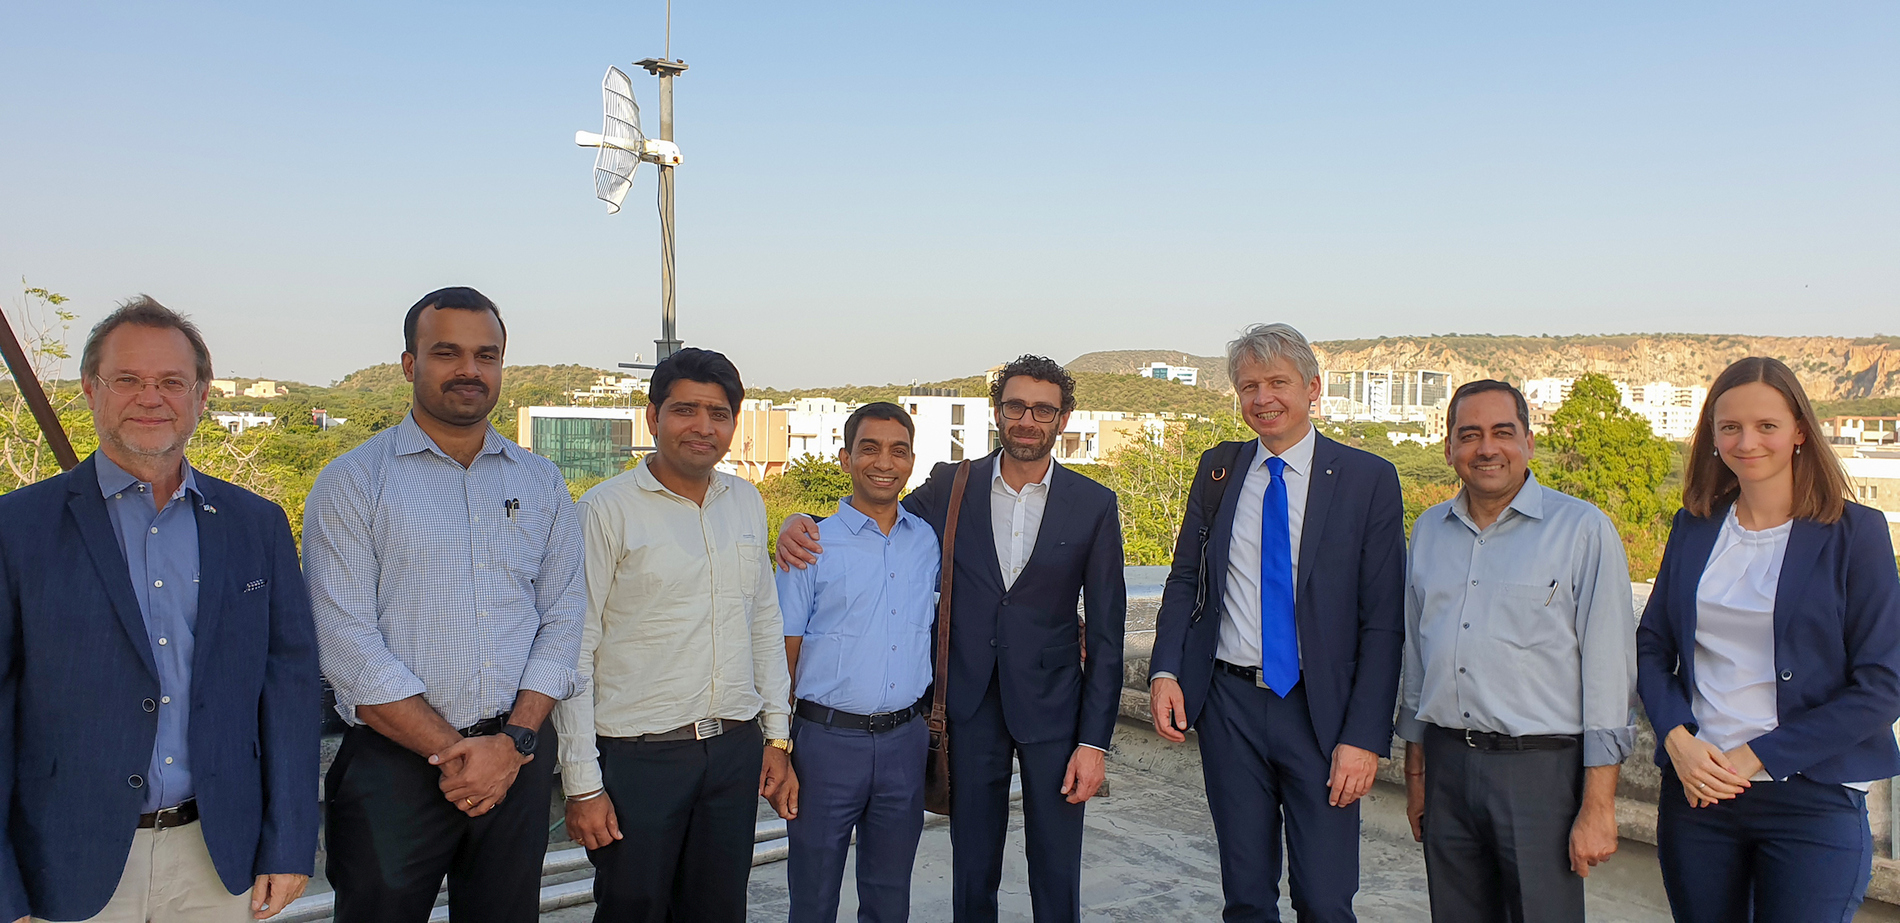 Partner Indien: OTH Amberg-Weiden und MNIT Jaipur weiten Zusammenarbeit aus